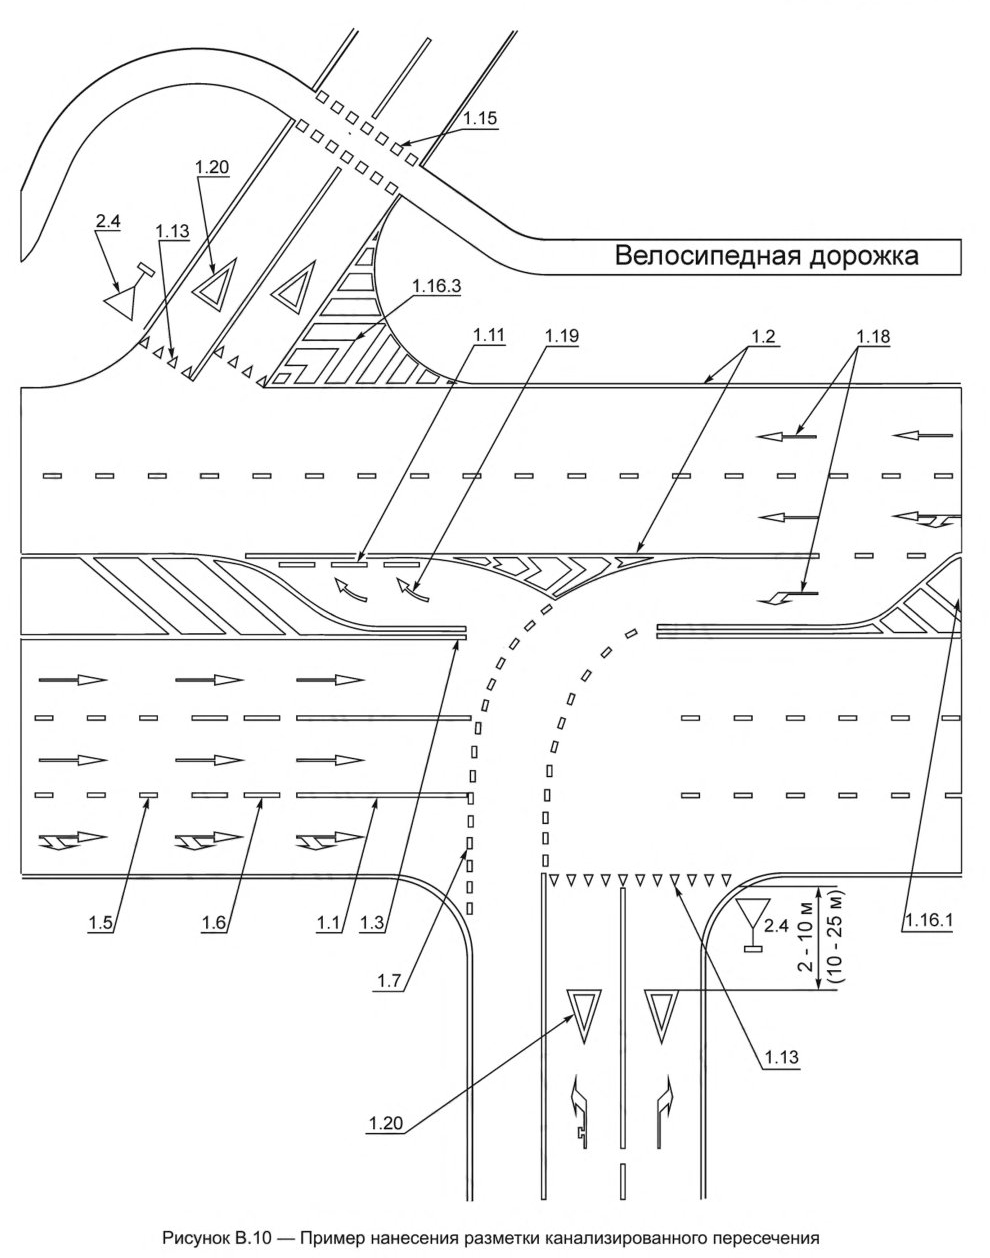 Иллюстрация к правилам применения технических средств организации дорожного движения